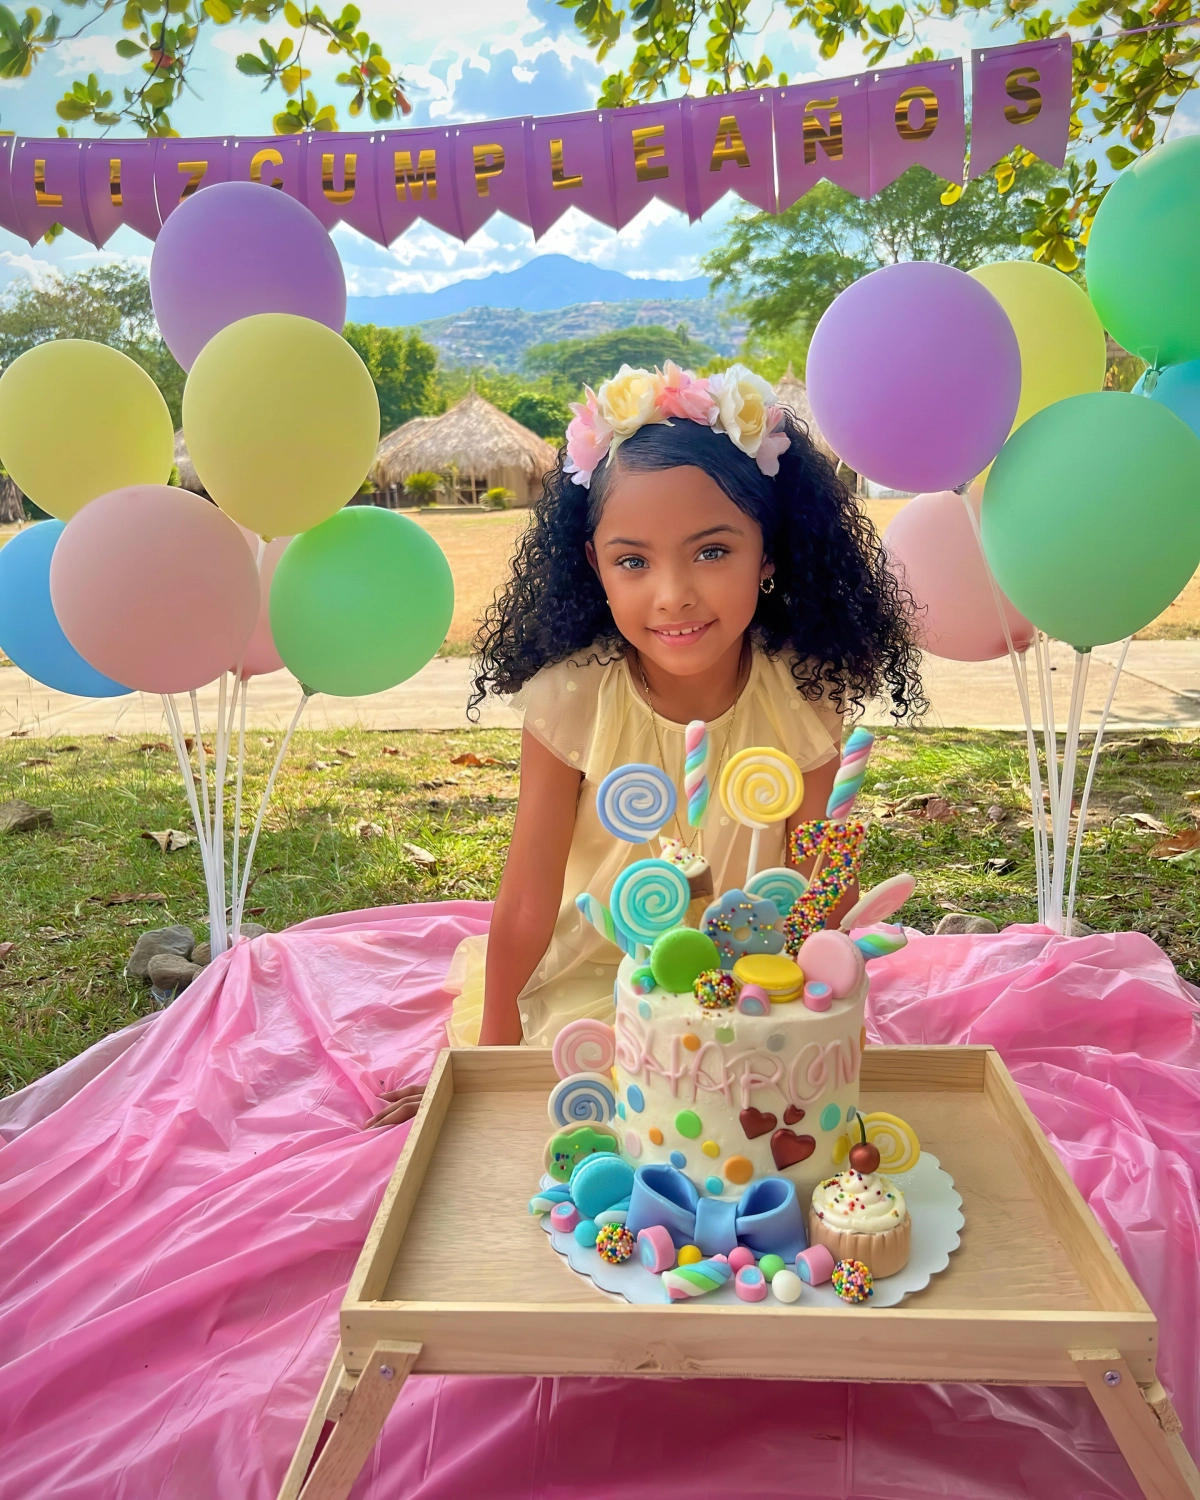 celebration anniversaire fille ballons gateau a decorations sucreries bonbons